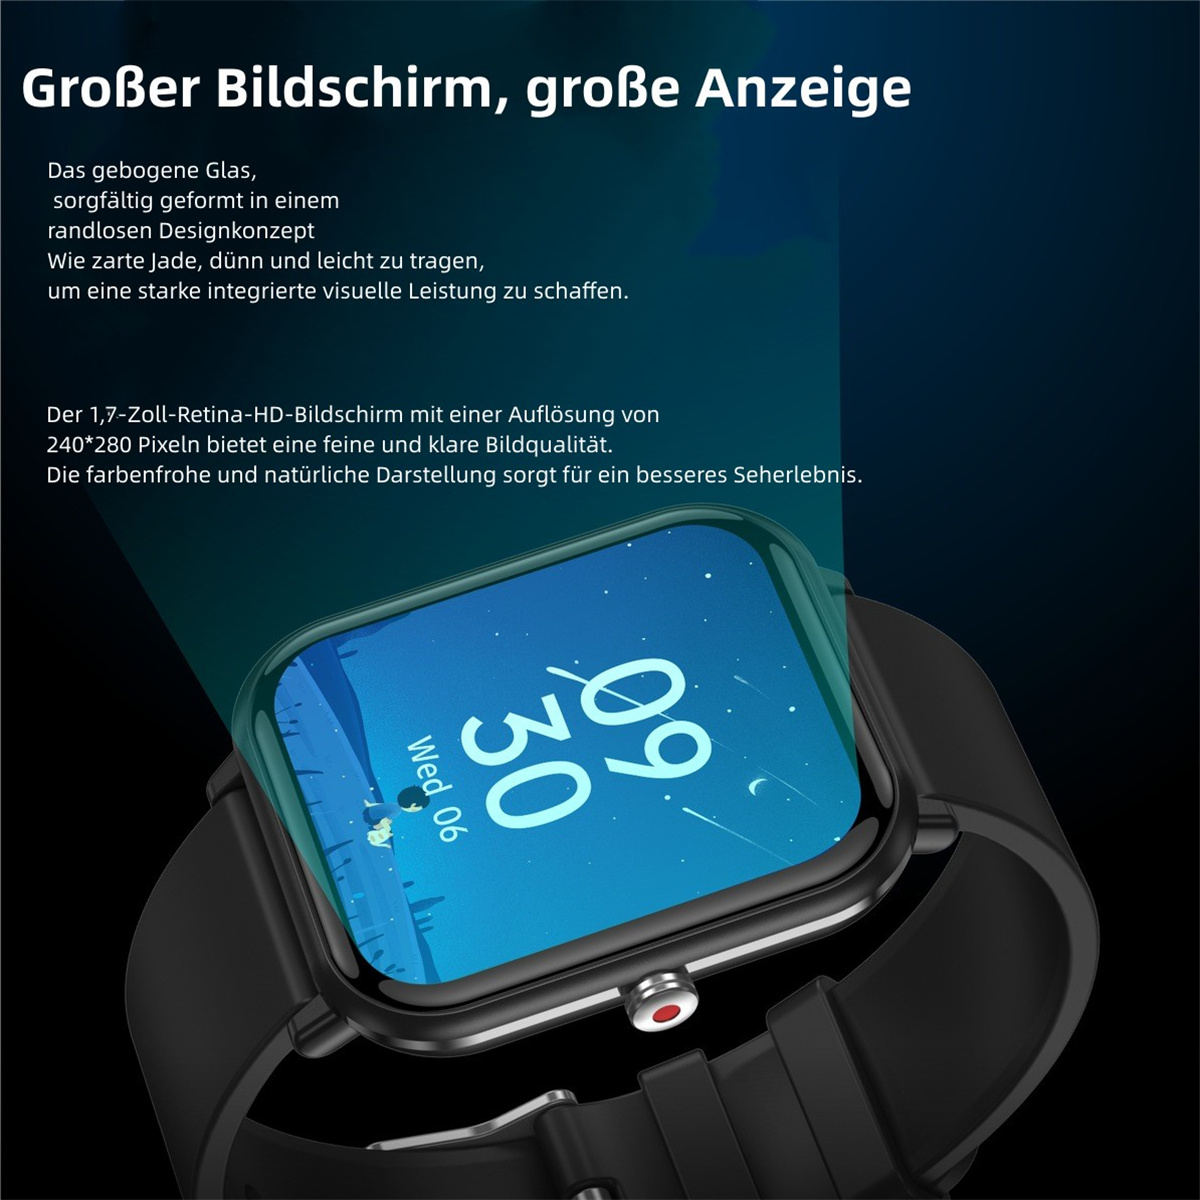 Sport Herzfrequenz Multifunktion Watch Musik Silikon, Schwarz SYNTEK Sportarmband Körpertemperatur Blutdruck Smart Smartwatch Telefon